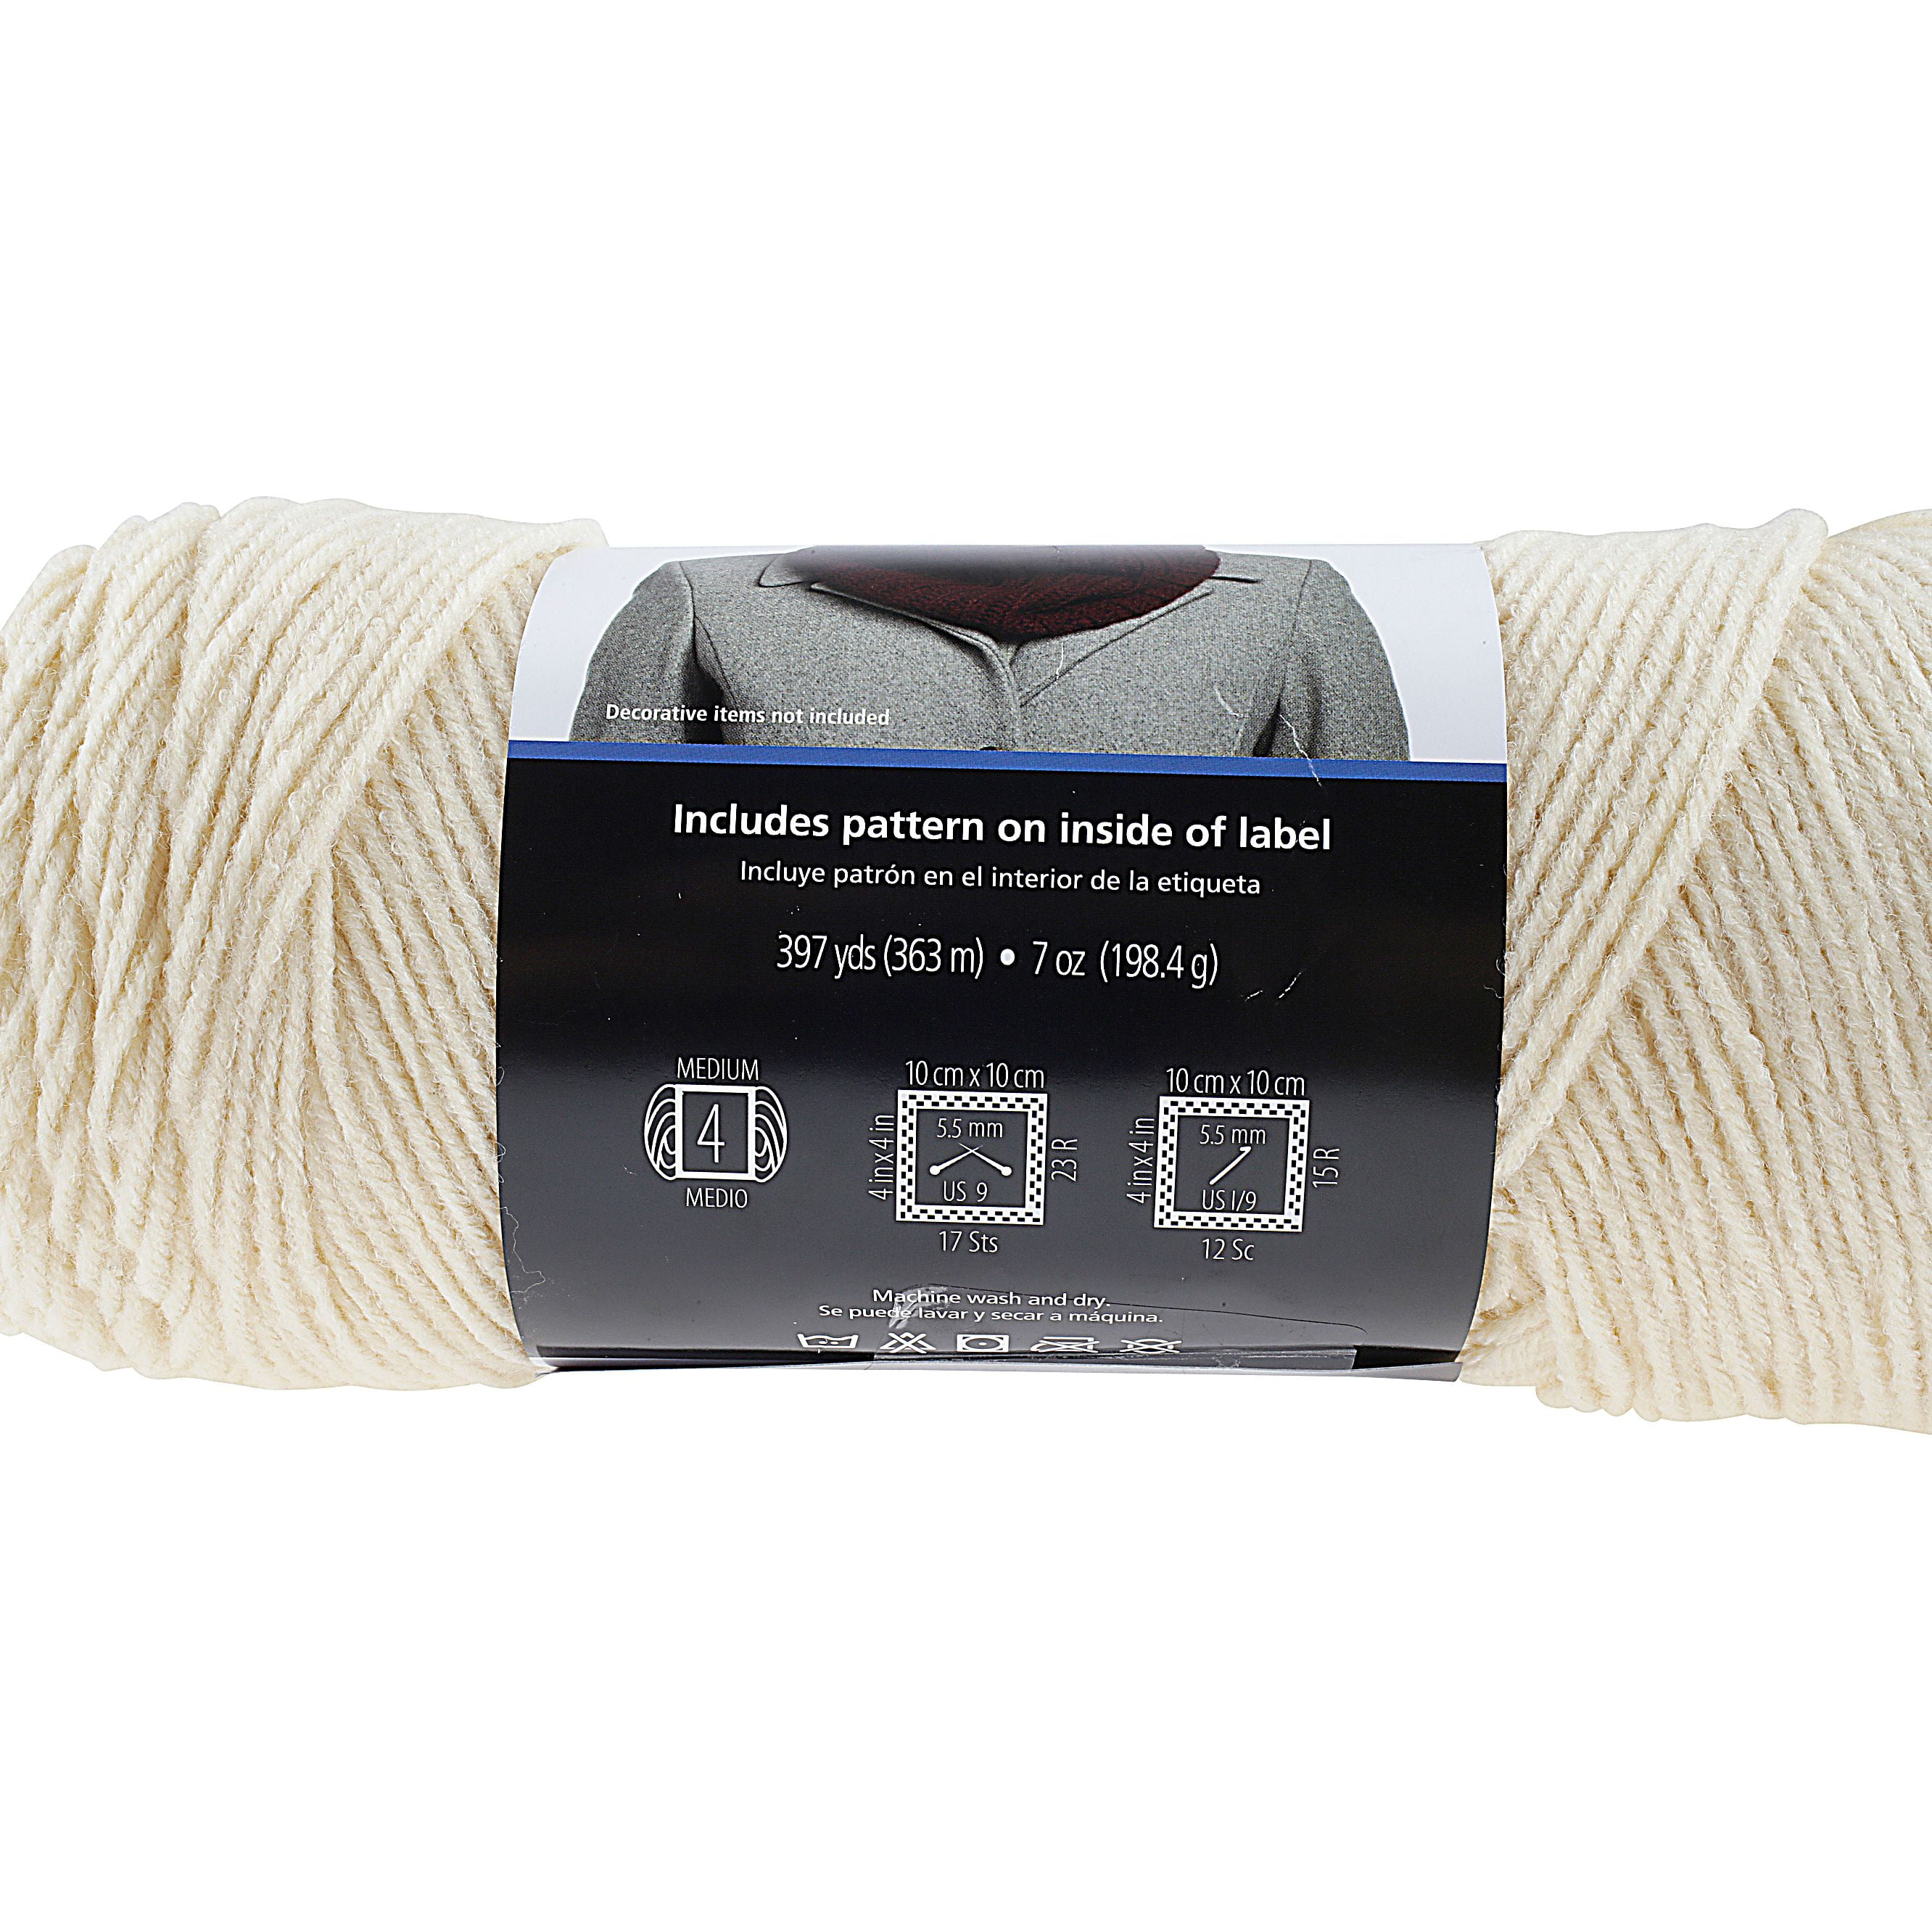 Mainstays Medium Acrylic Gray Yarn, 397 yd 